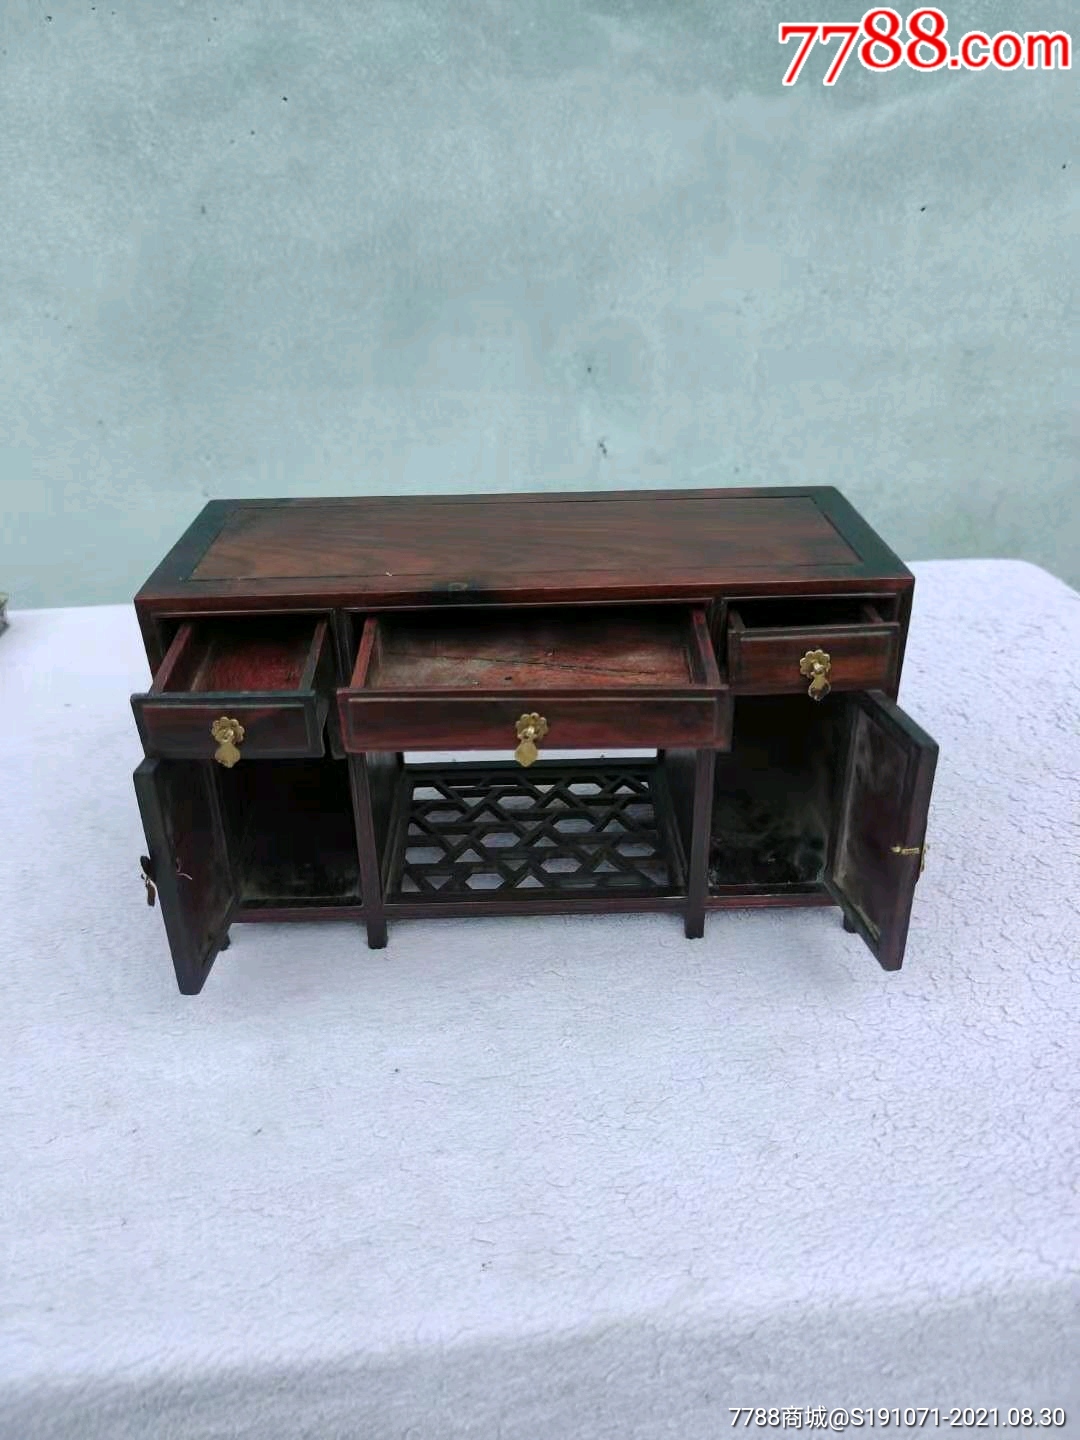 五六七十年代红木小桌一个,做工精美,小巧玲珑,木纹漂亮